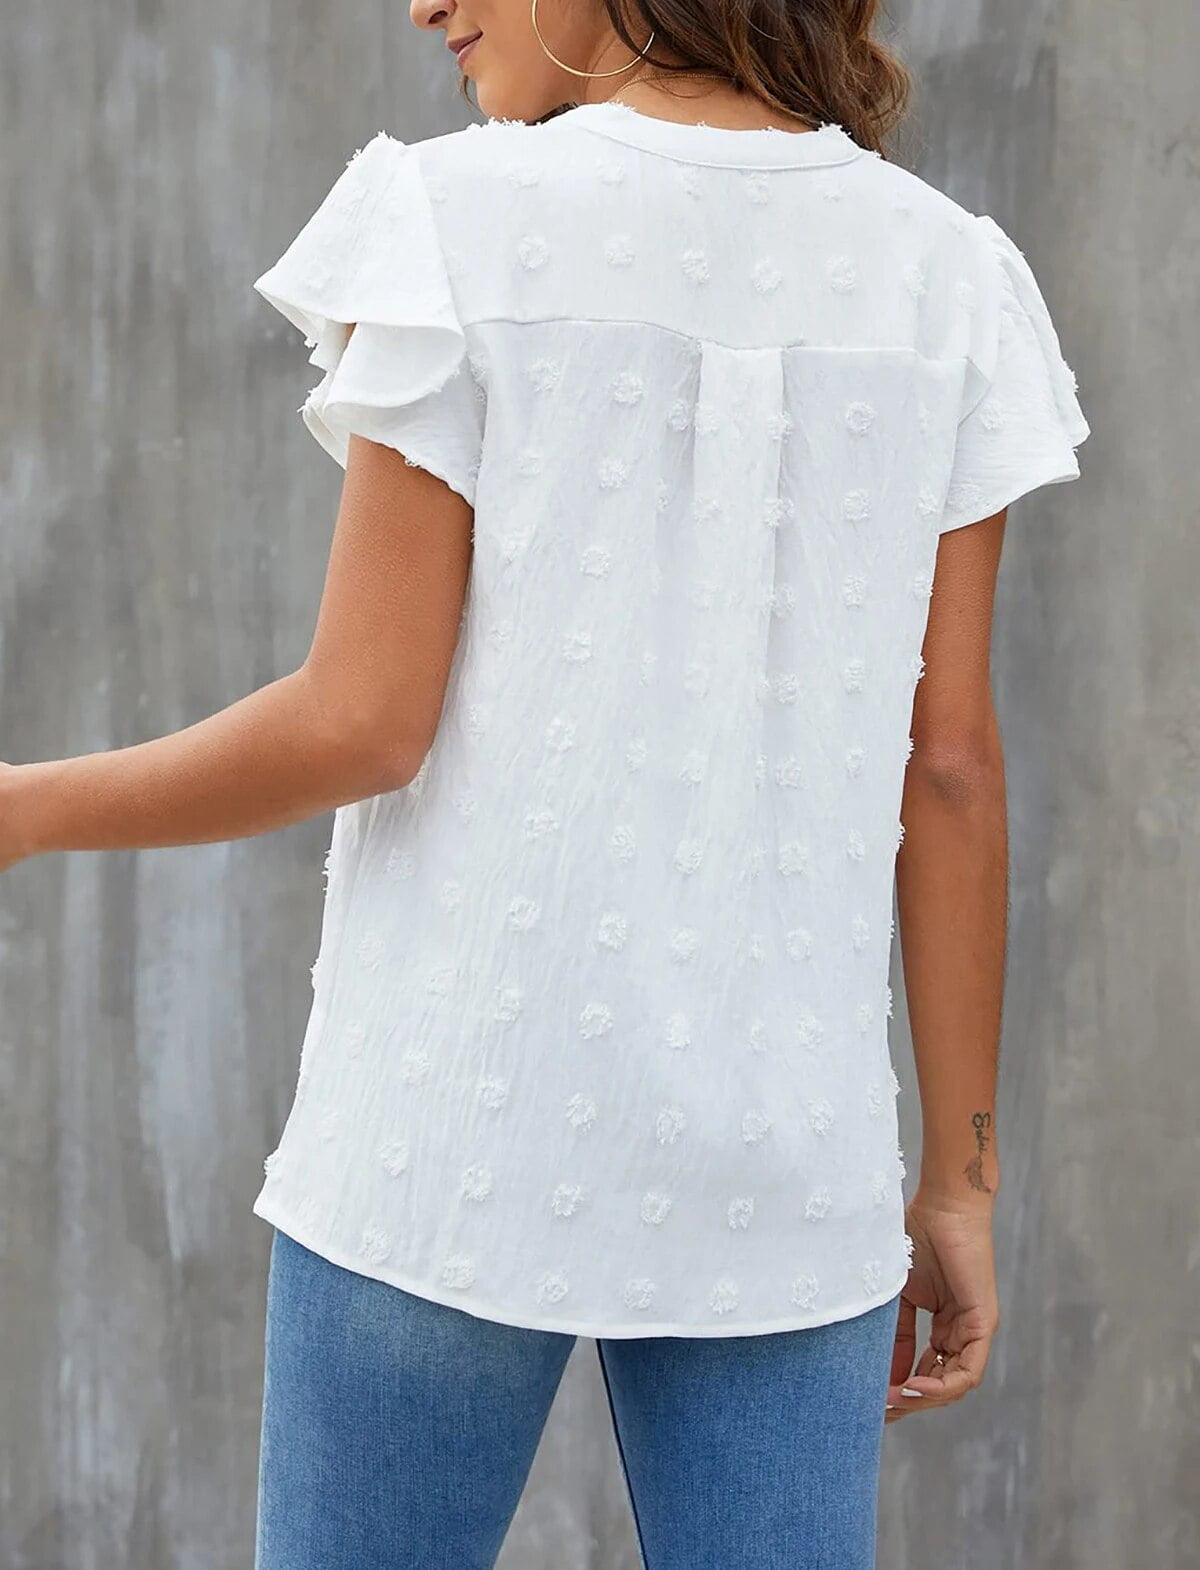 Fantaslook Blouses for Women Dressy V Neck Ruffle Sleeve Summer